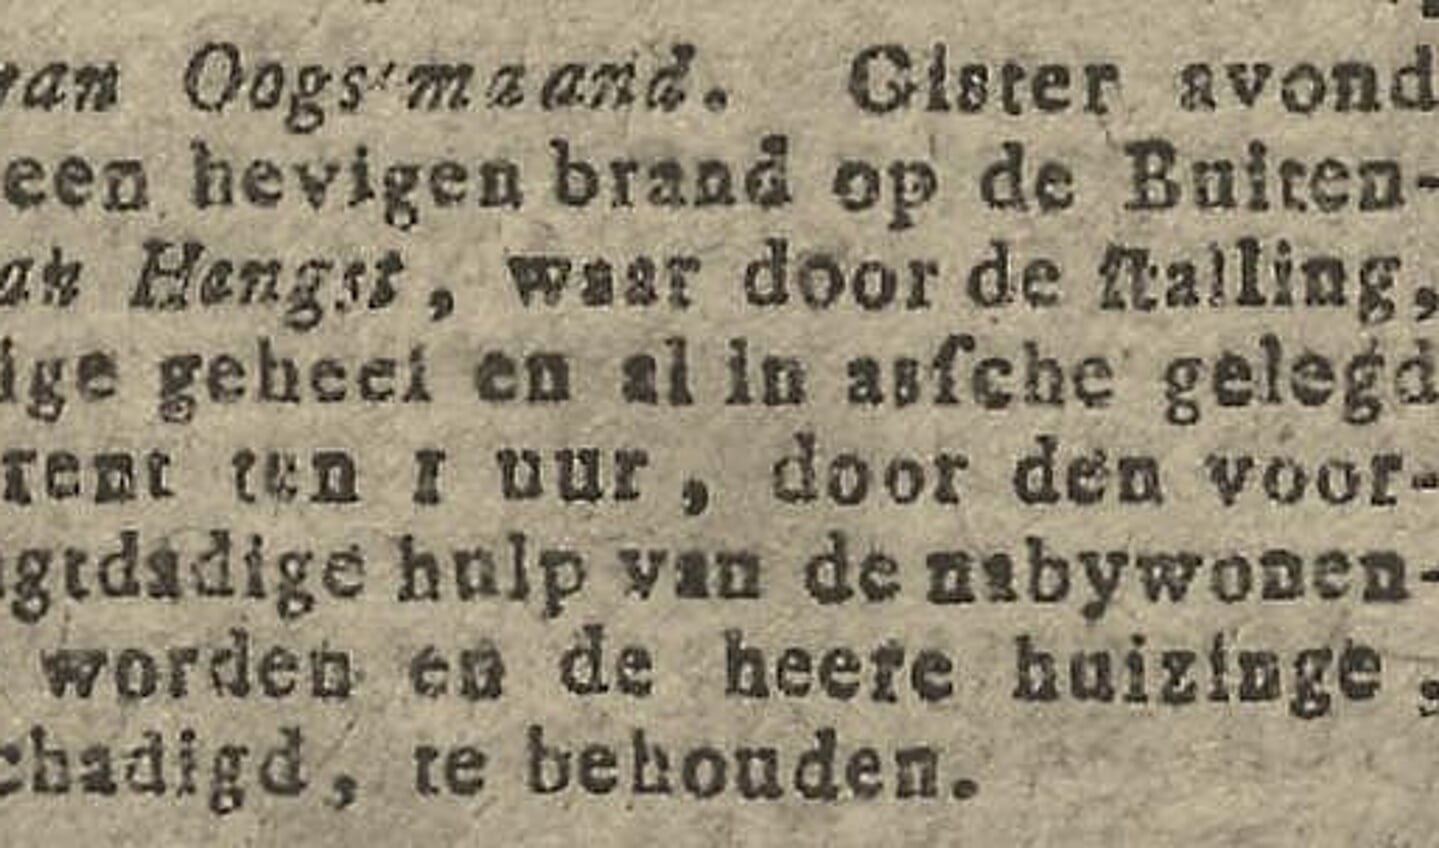 Een bericht over de brand van Persijn stamt uit de Haagsche Courant van 15 augustus 1810.